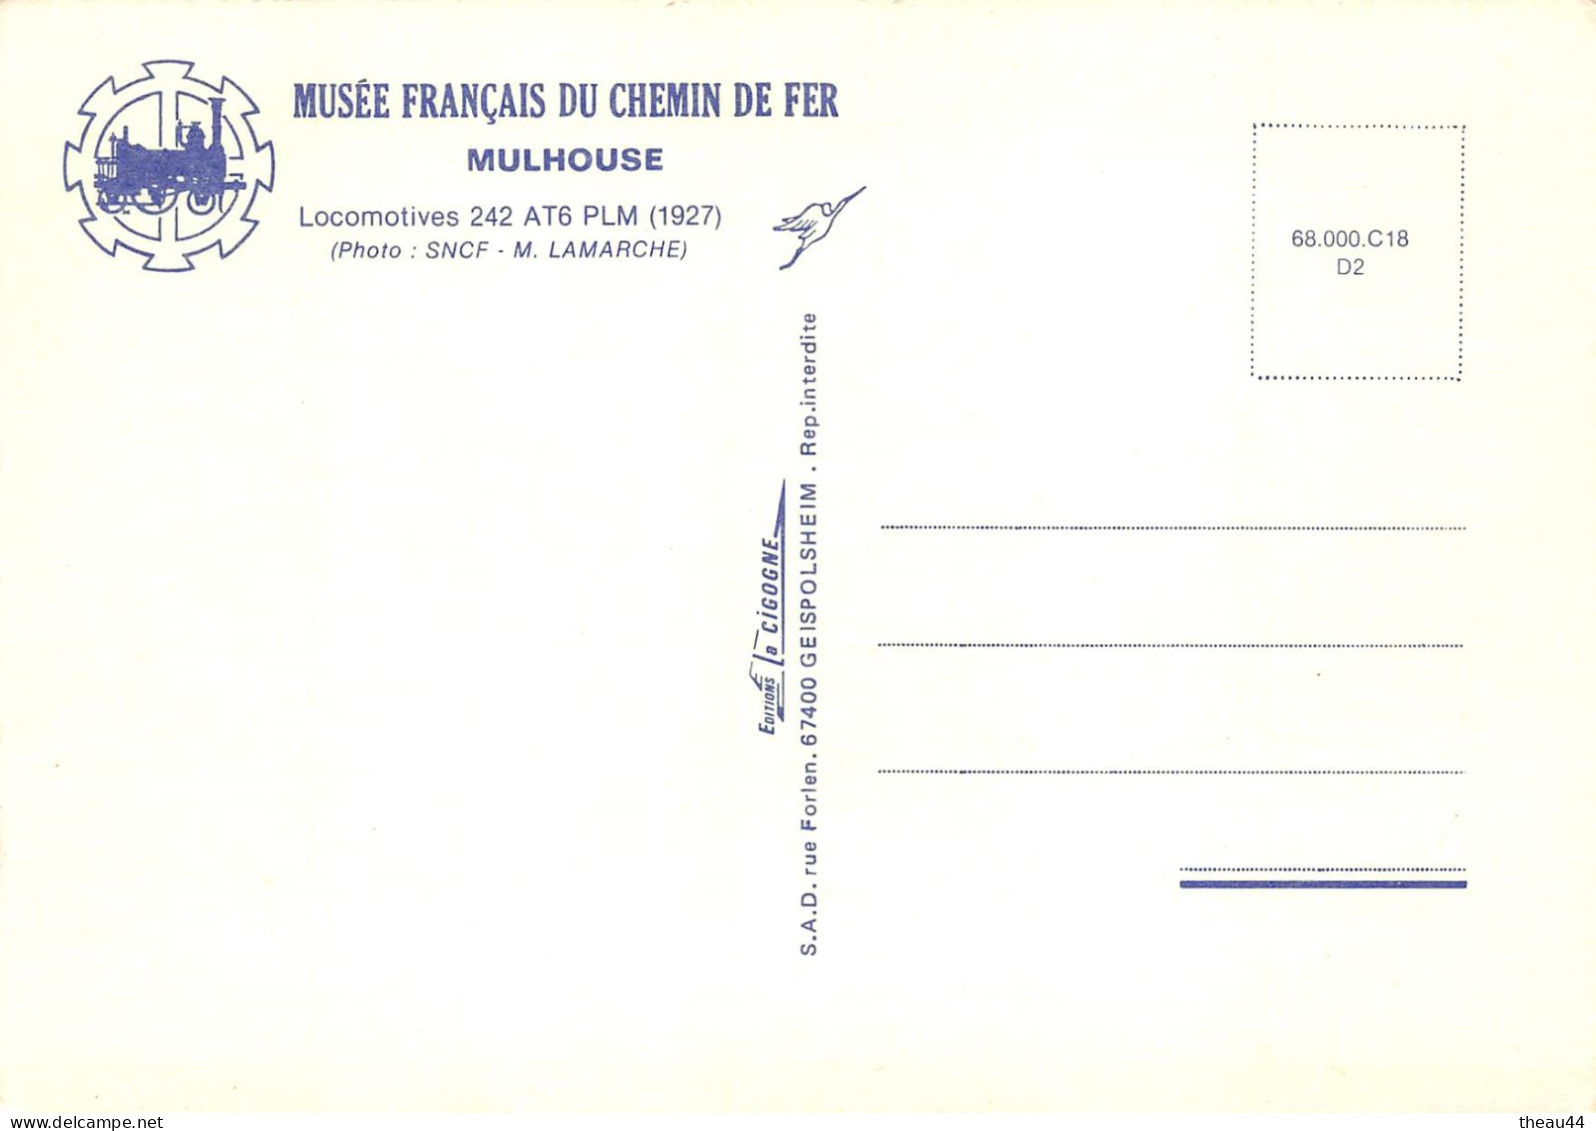 ¤¤   -   Lot de 10 Cartes du Musée Français du Chemin de Fer de MULHOUSE  -  Locomotives, Wagons, Trains   -   ¤¤